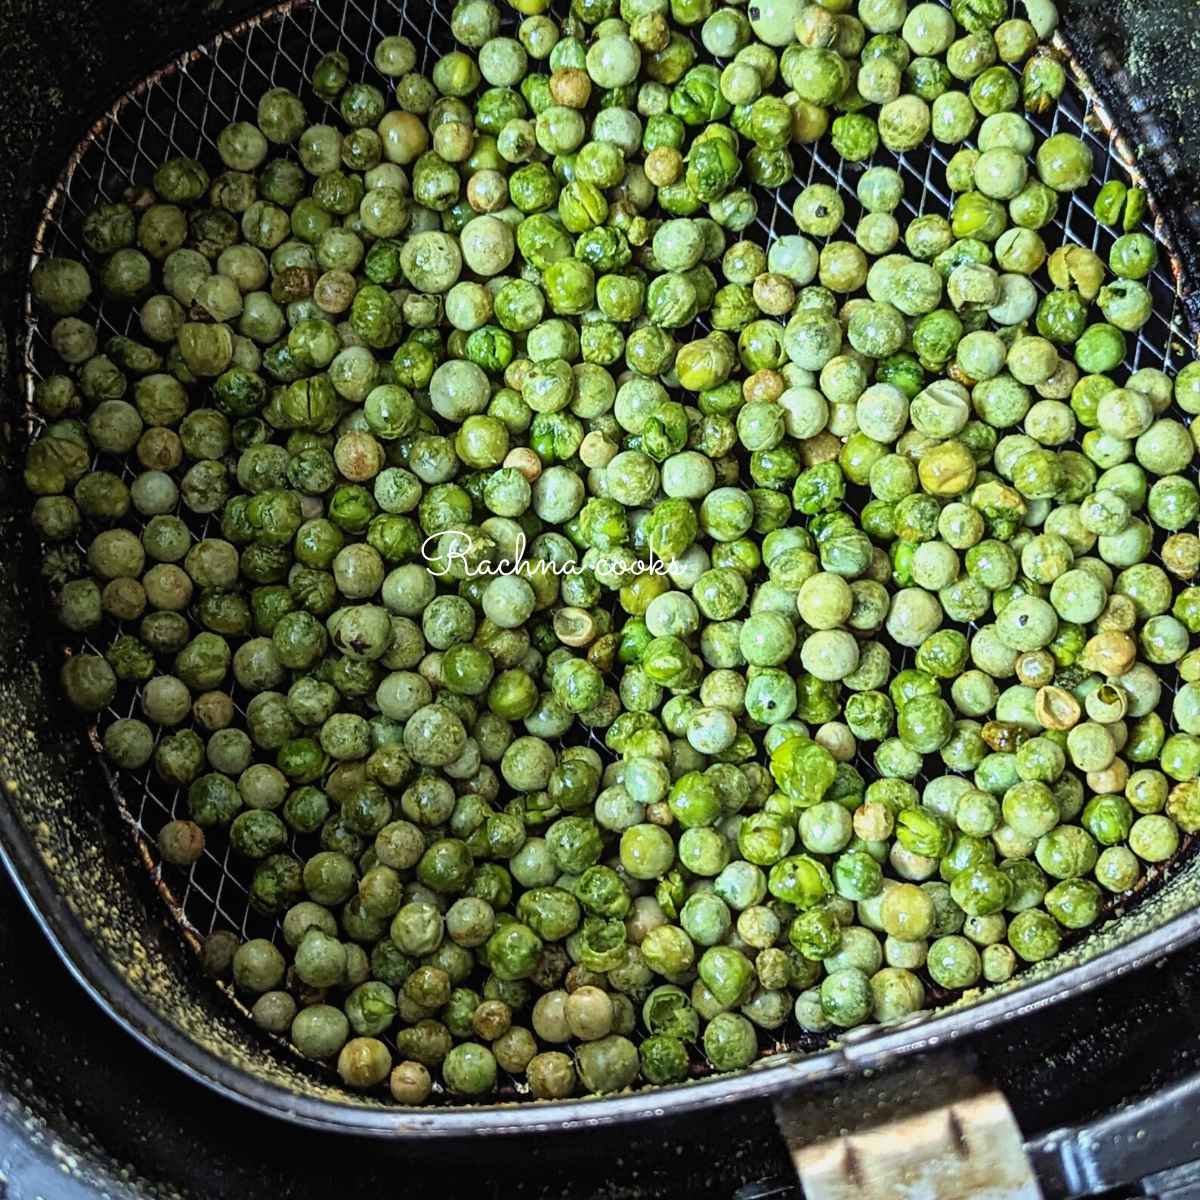 Crispy green peas after air frying in air fryer basket.